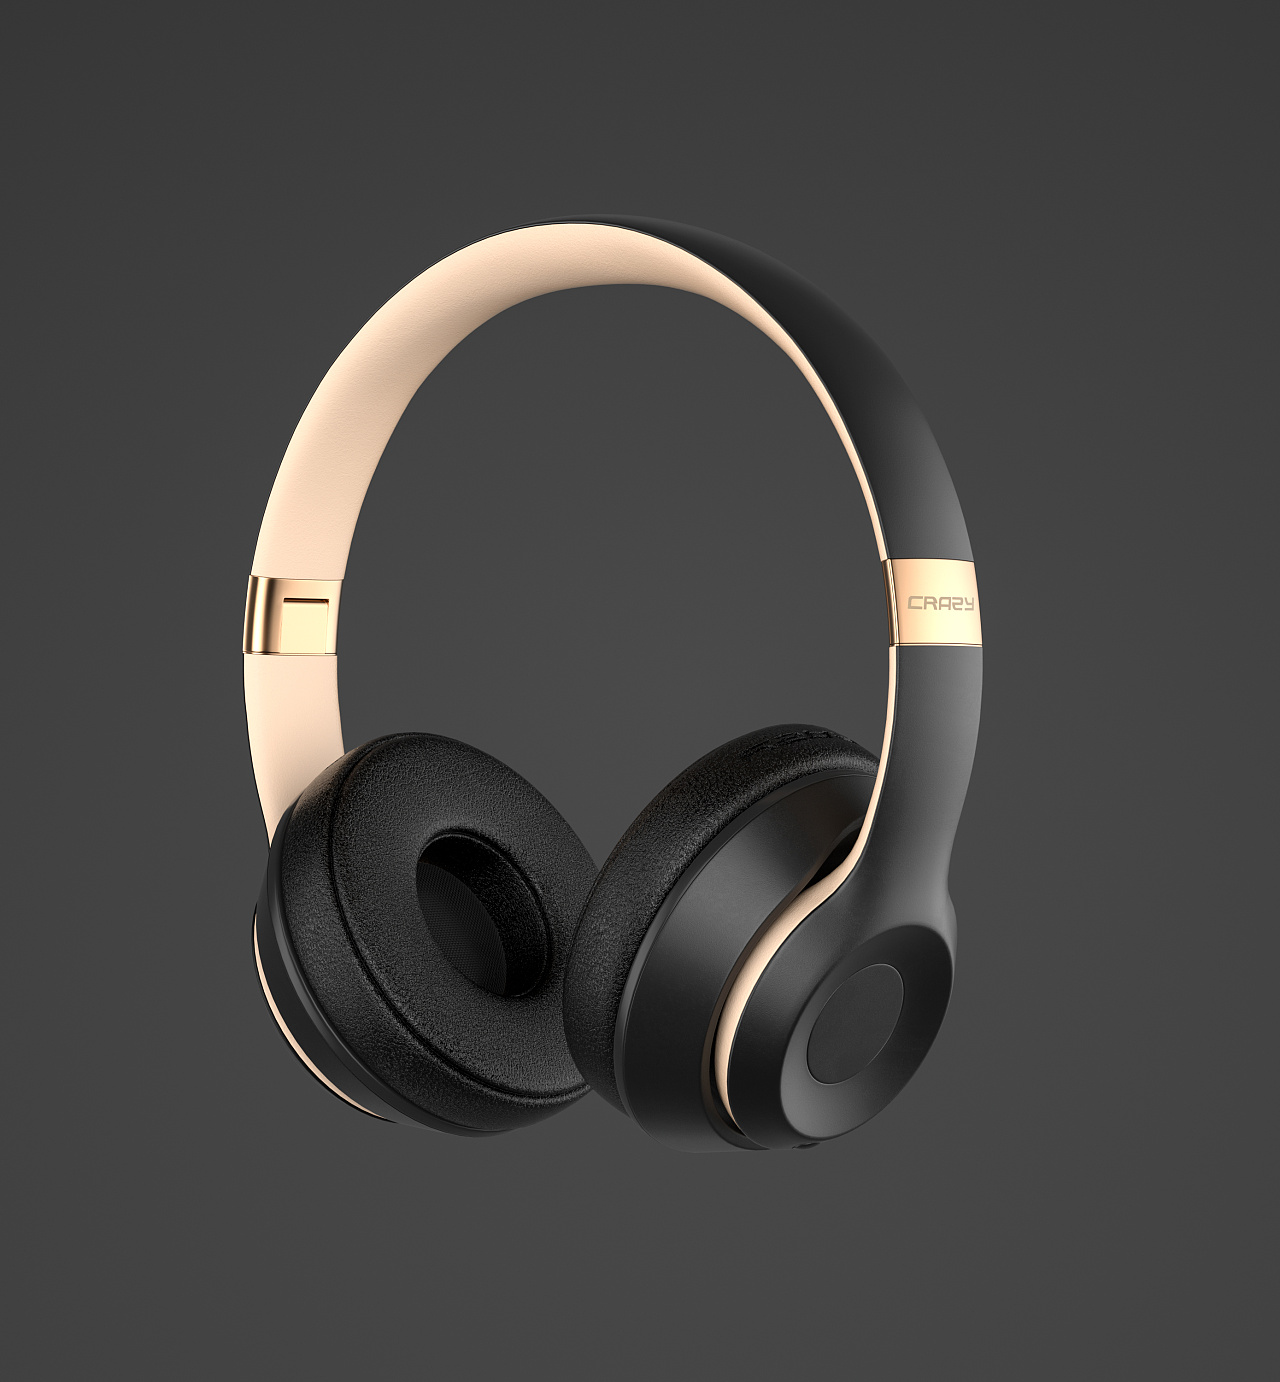 S.W.ONE头戴式耳机设计——让你倾听世界的美妙~ - 普象网